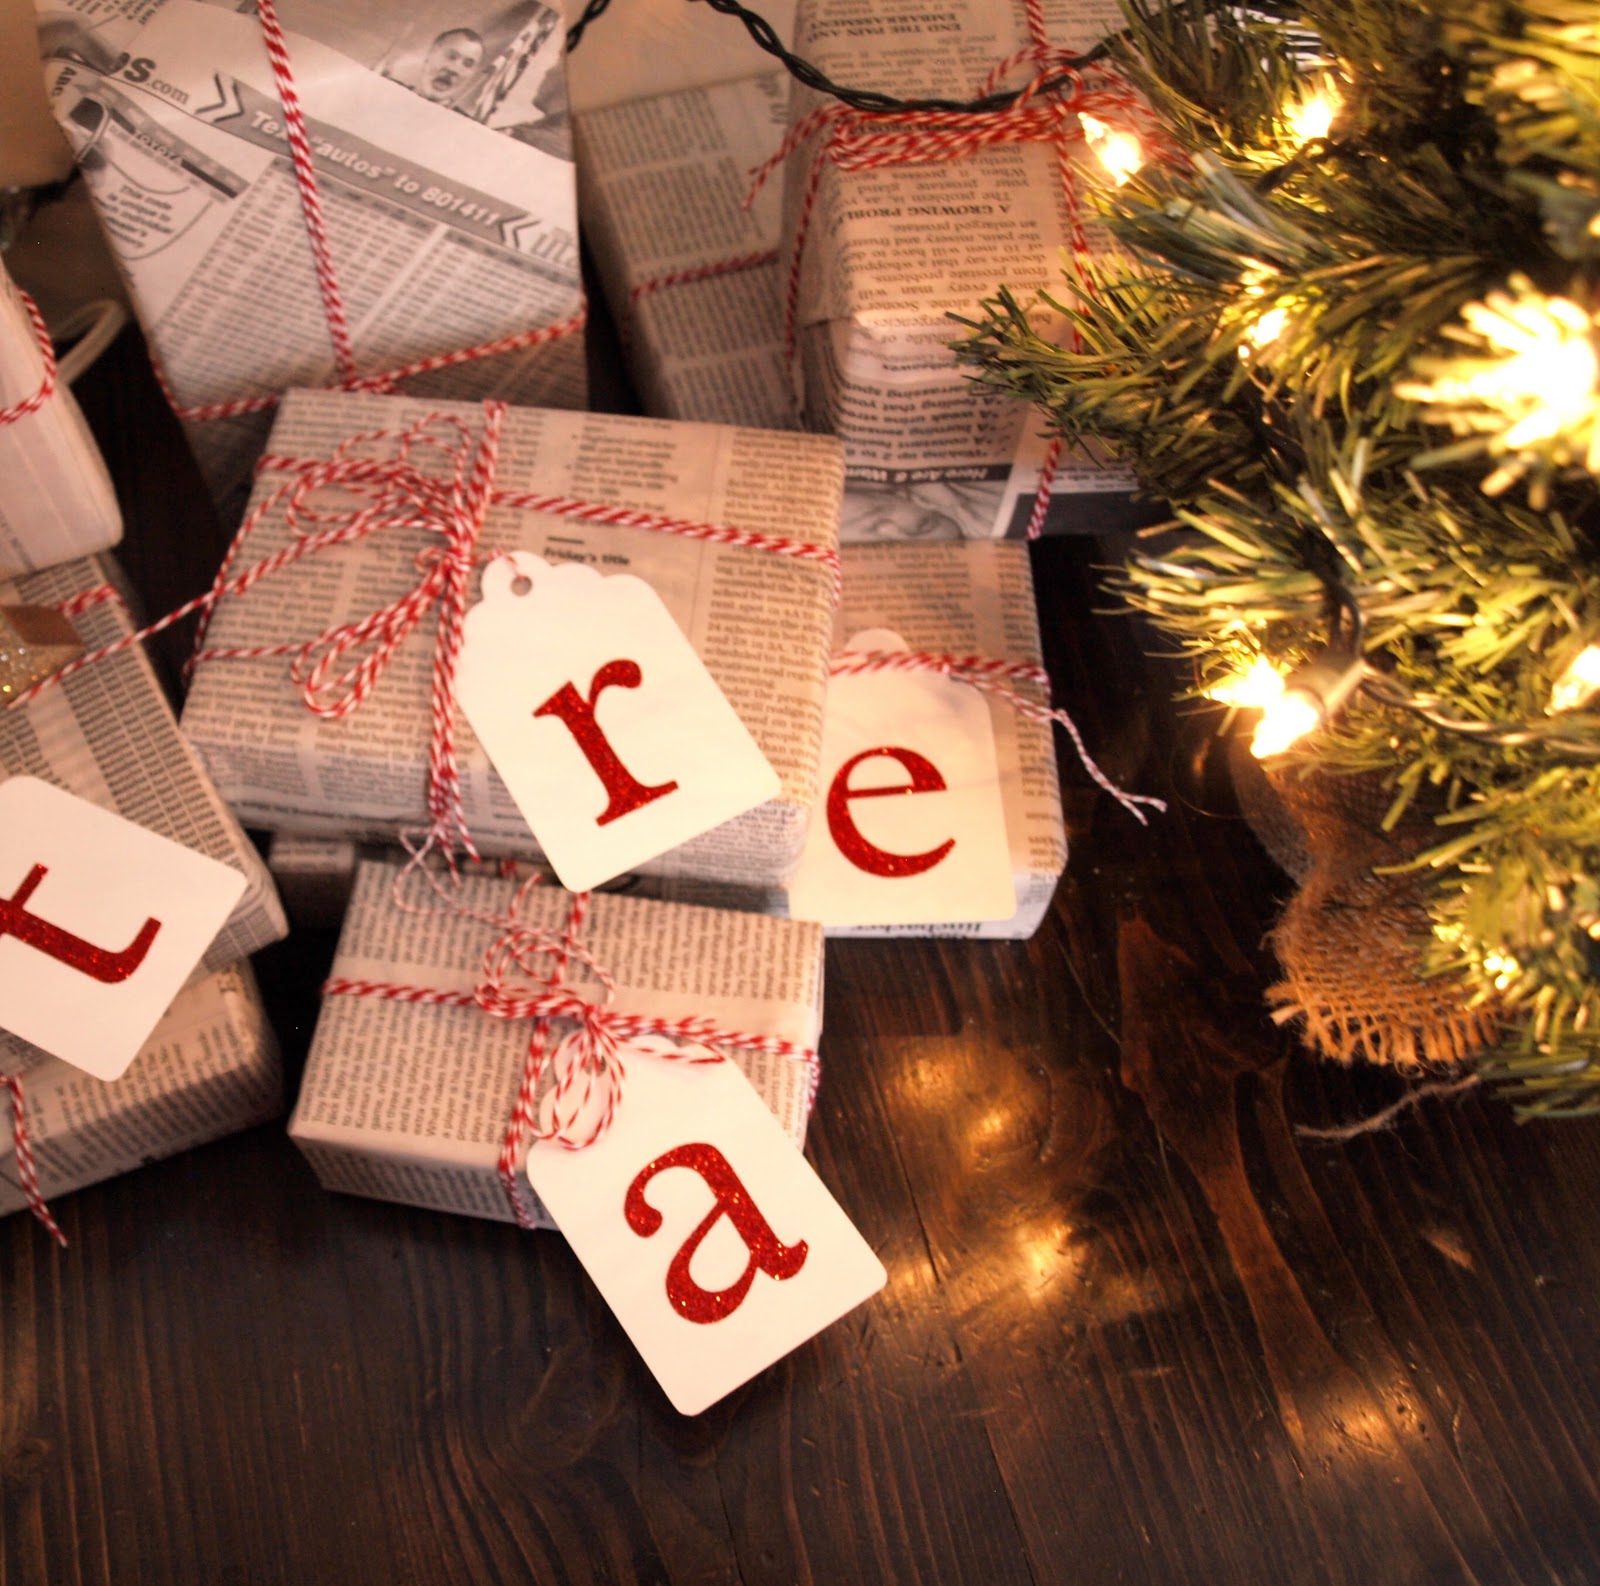 Impacchettare Regali Di Natale.5 Idee Per Incartare I Regali Di Natale In Modo Ecologico Komama